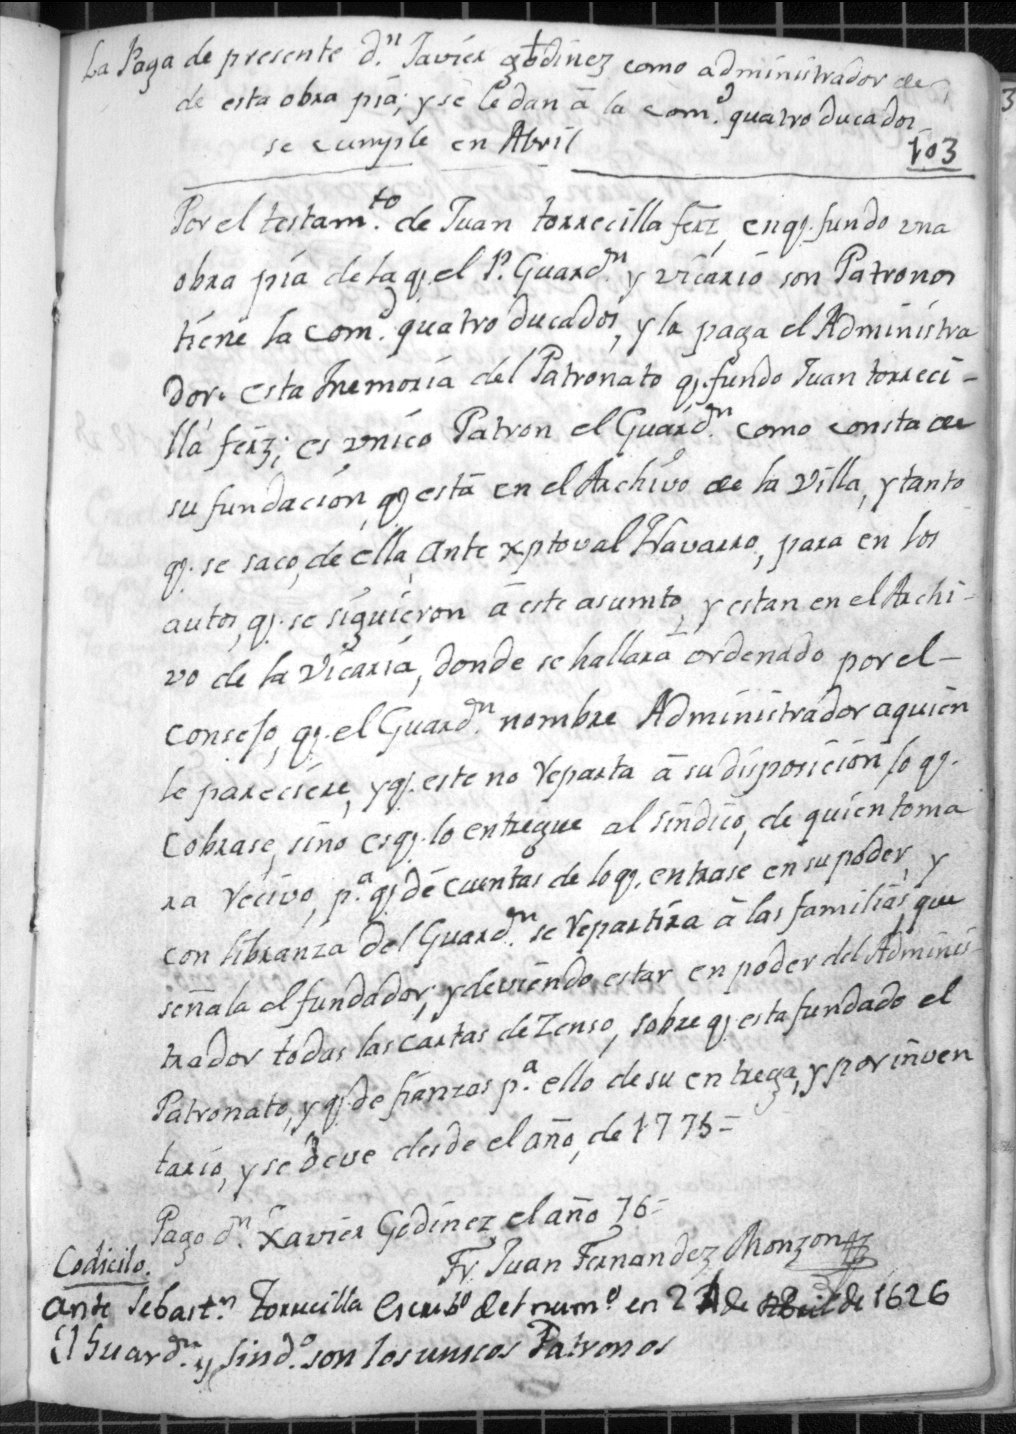 Registro de censos y pías memorias del Convento de San Francisco de Caravaca. Años 1787-1835.